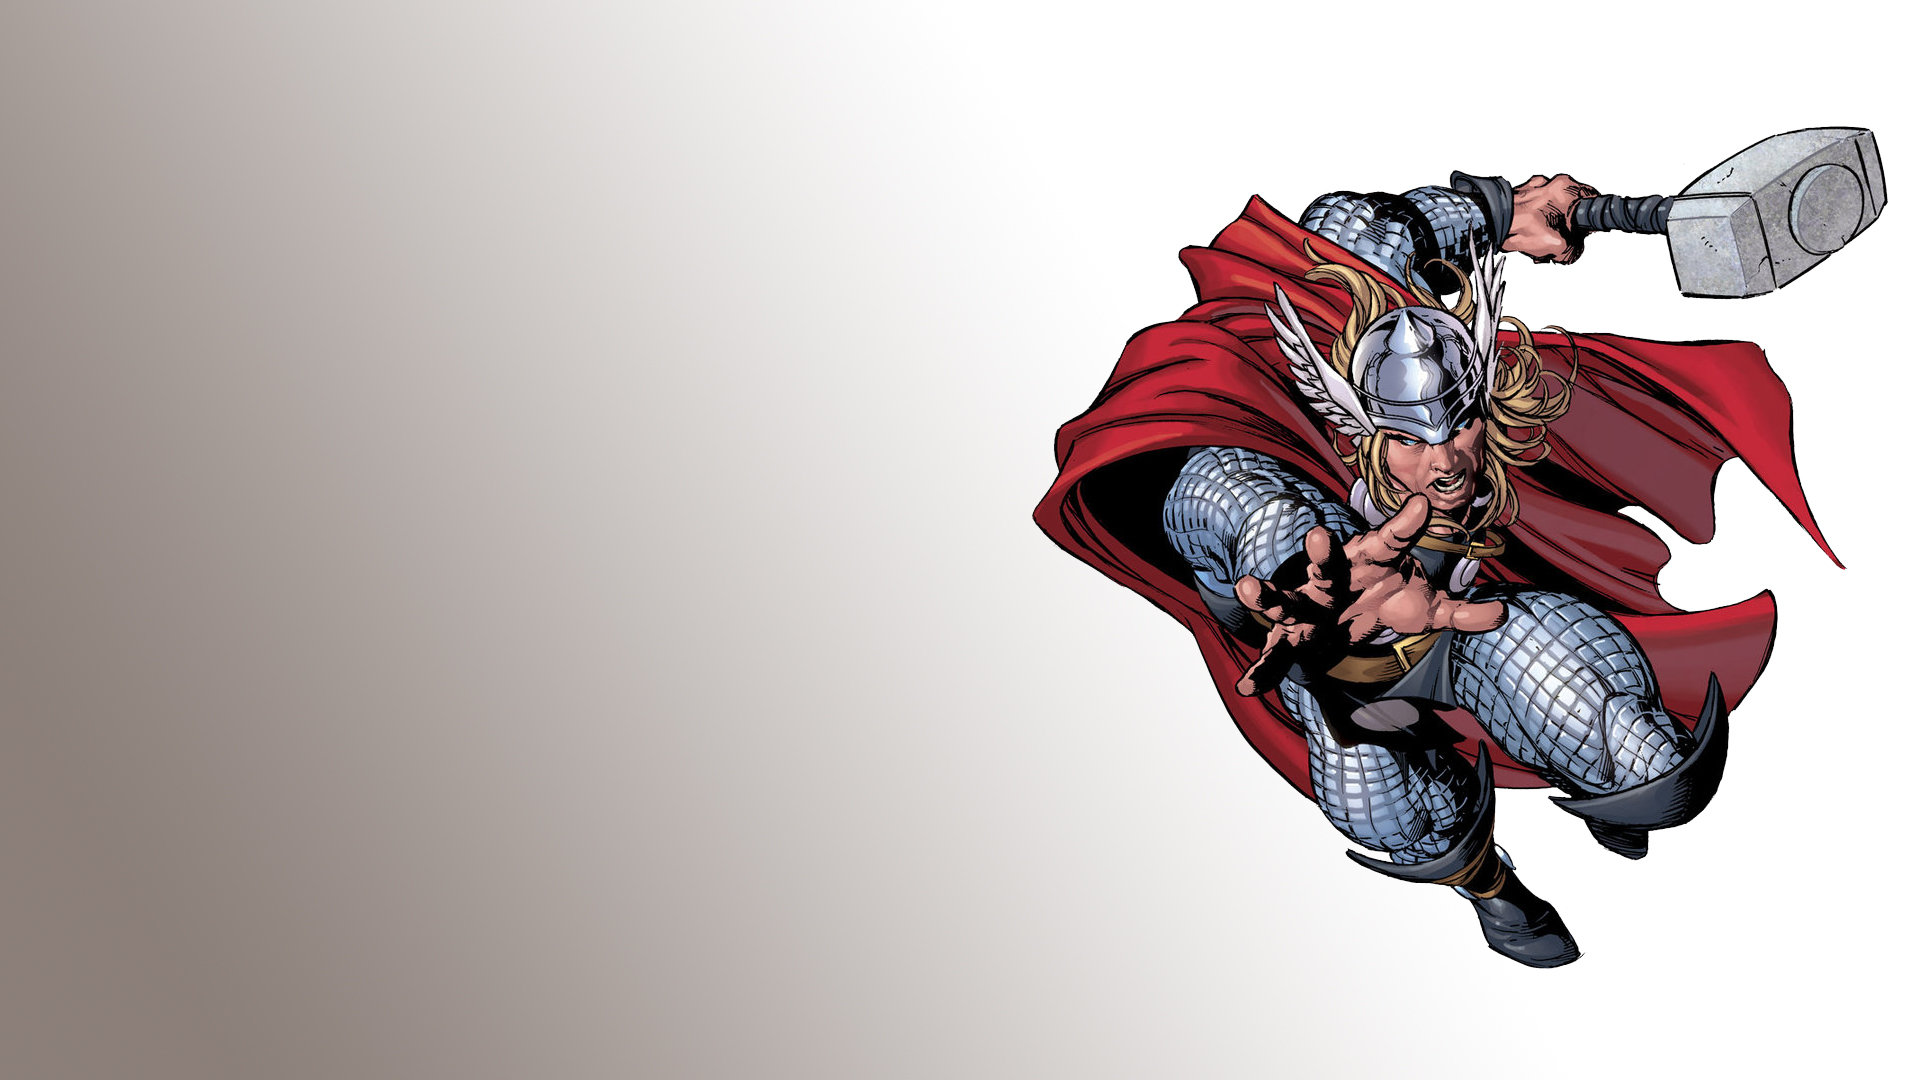 Free Download Thor Comics Wallpaper Id - Super Heroes Marvel Png - HD Wallpaper 